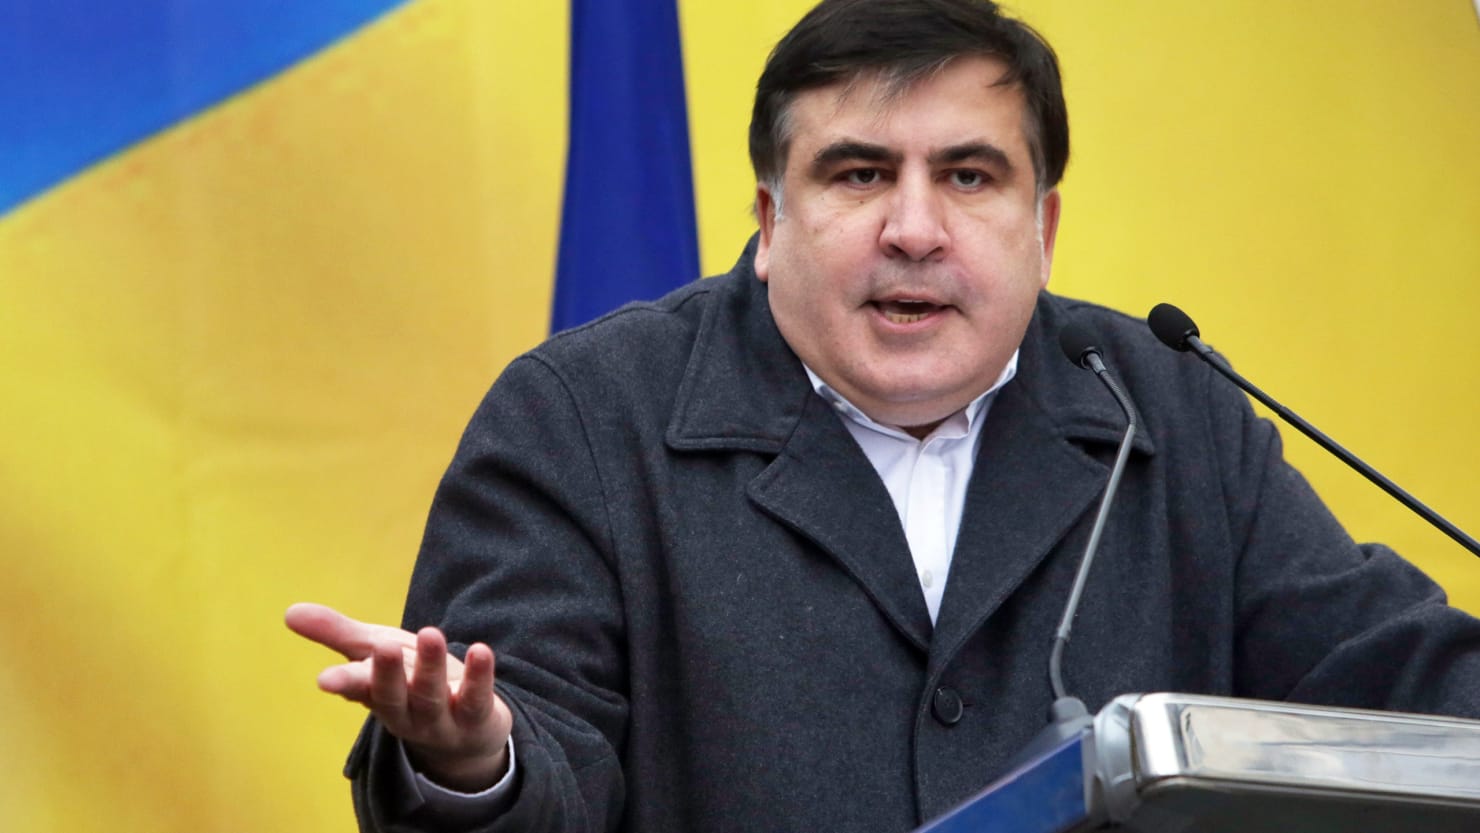 Müxalifəti Saakaşvilidən uzaqlaşdıran səbəb